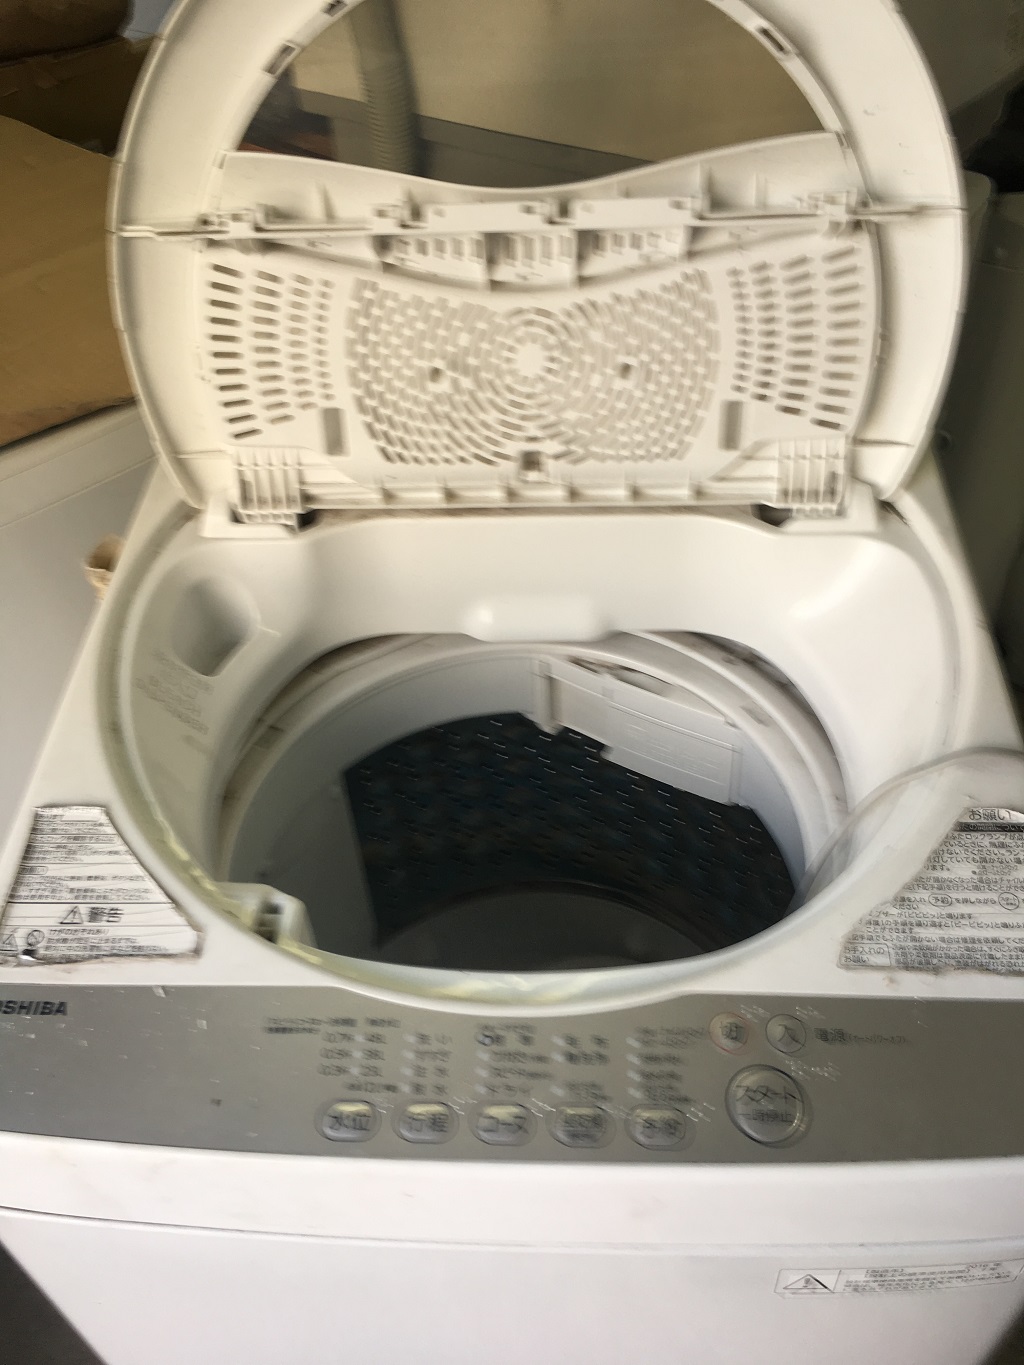 標準付属品が揃った洗濯機